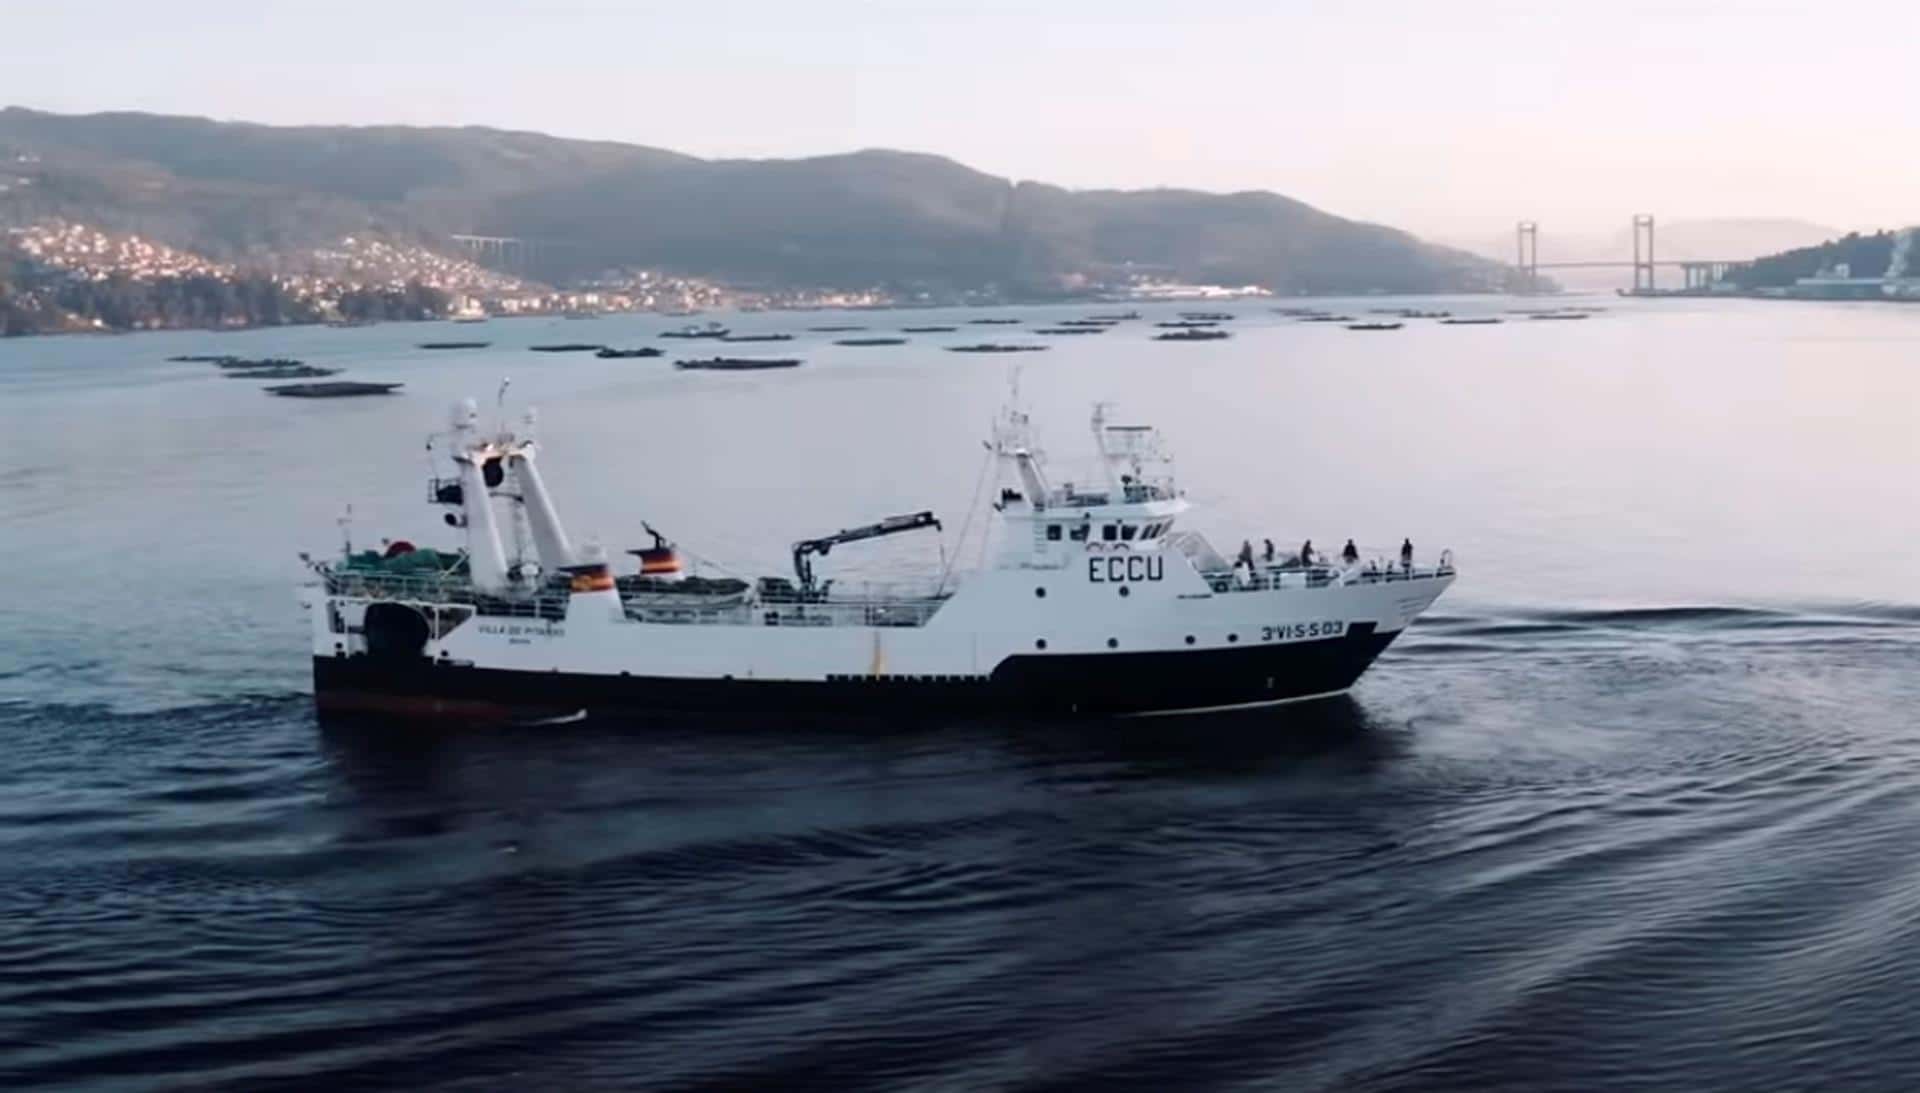 Naufragio de barco pesquero español en Canadá deja 7 muertos